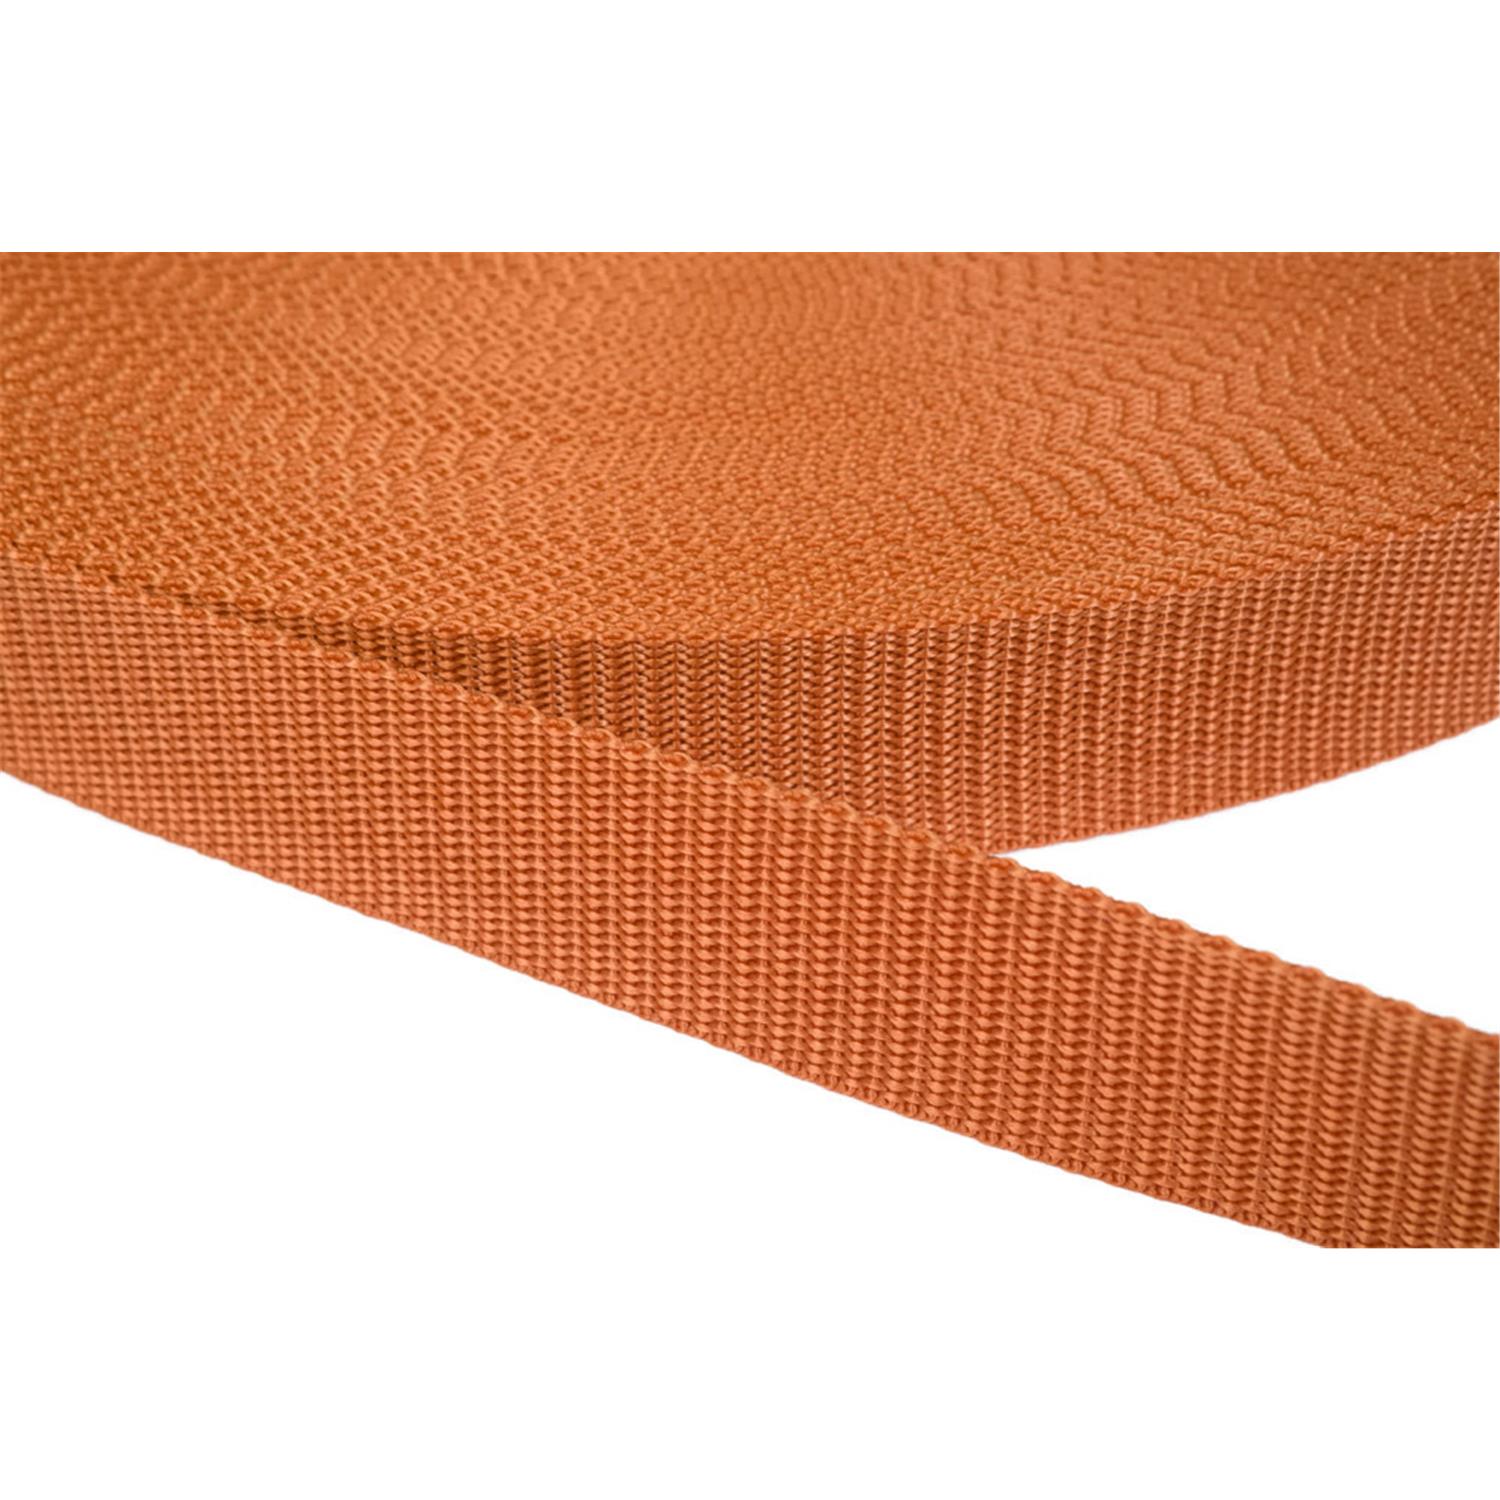 Gurtband 40mm breit aus Polypropylen in 41 Farben 05 - ockerbraun 6 Meter